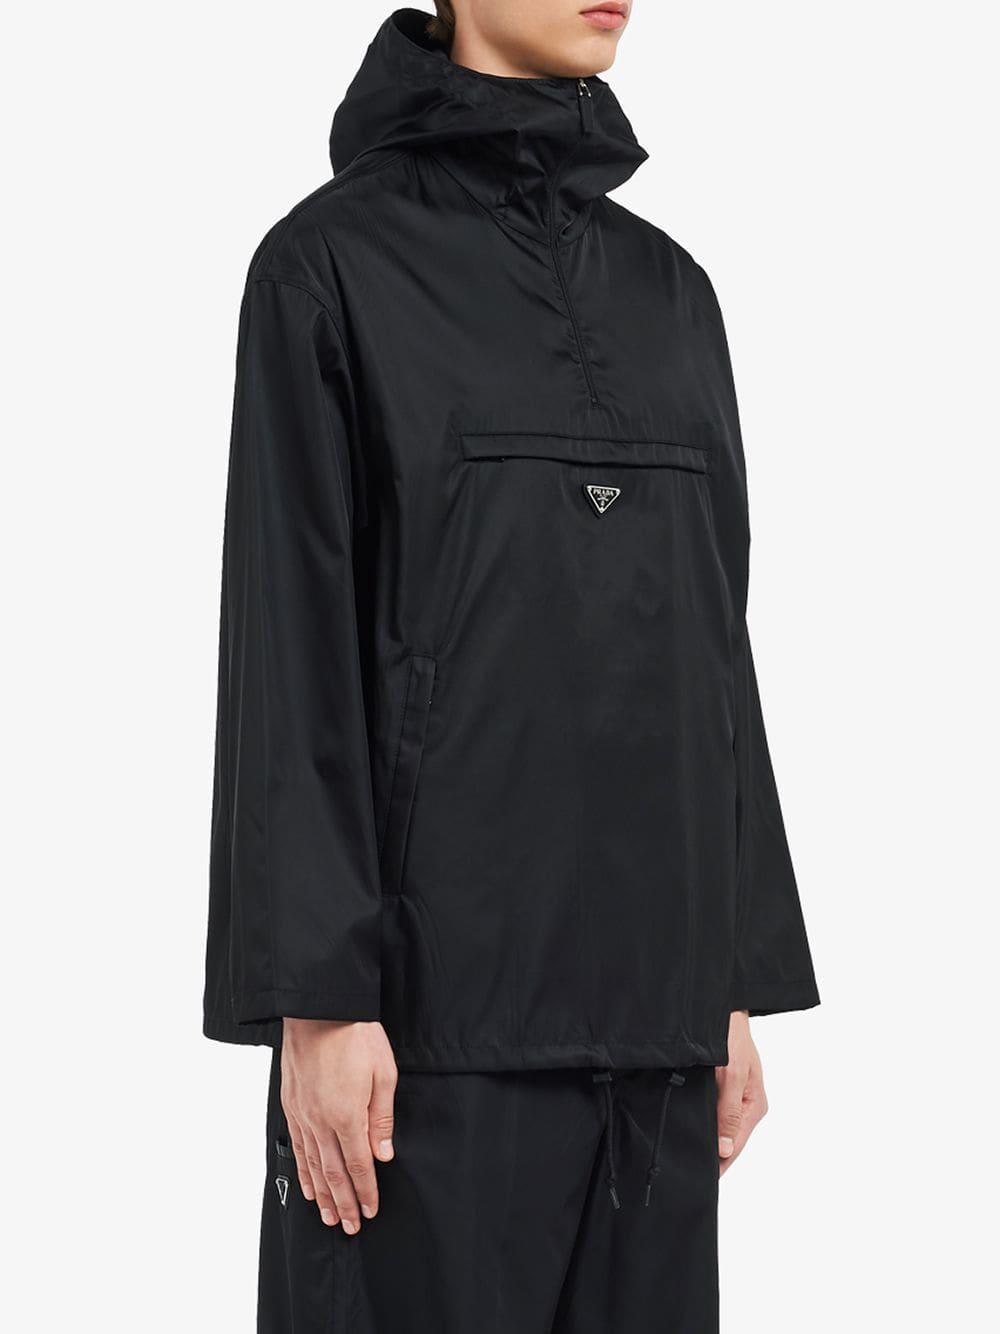 Prada Synthetic Nylon Gabardine Anorak Jacket in Black for Men - Lyst